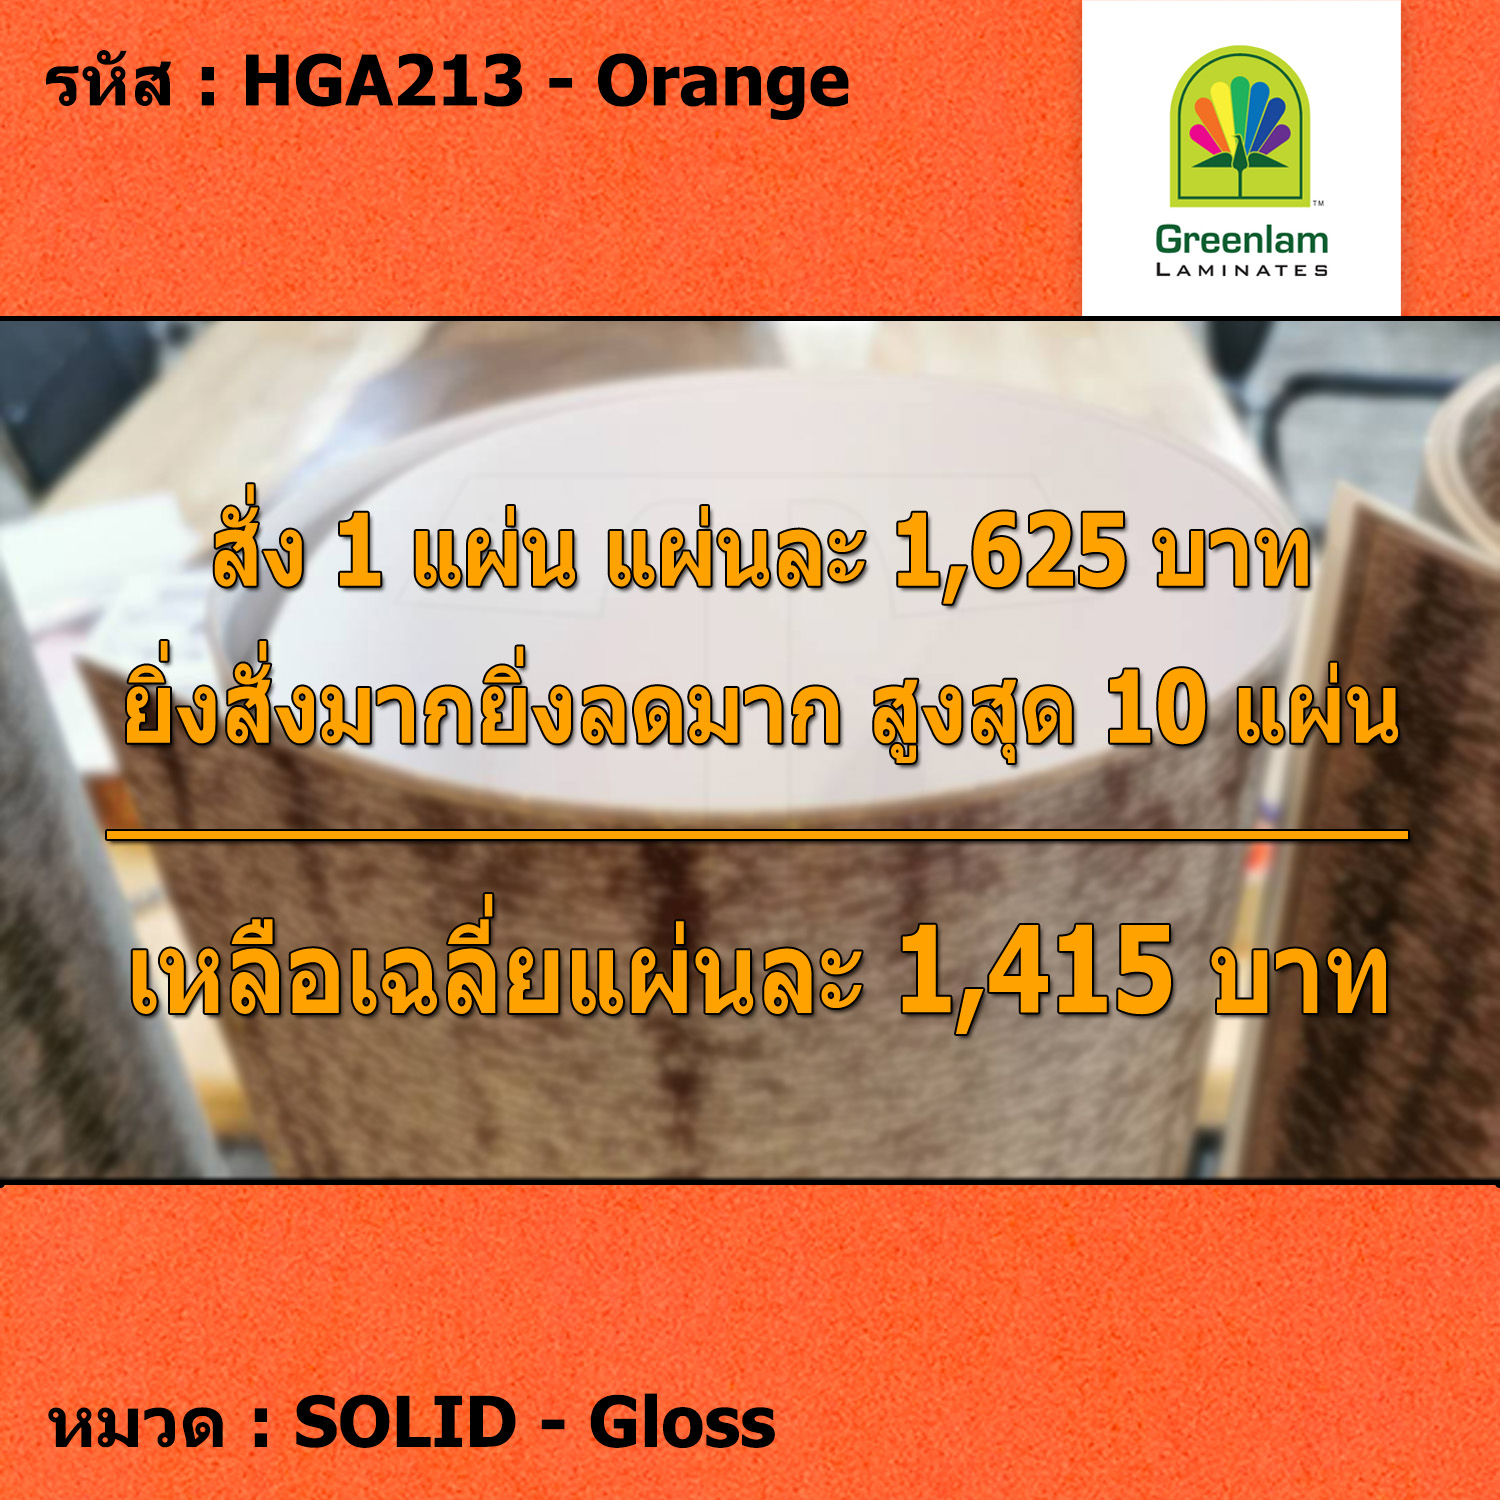 แผ่นโฟเมก้า แผ่นลามิเนต ยี่ห้อ Greenlam สีส้ม รหัส HGA213 Orange พื้นผิวลาย Gloss ขนาด 1220 x 2440 มม. หนา 1.00 มม. ใช้สำหรับงานตกแต่งภายใน งานปิดผิวเฟอร์นิเจอร์ ผนัง และอื่นๆ เพื่อเพิ่มความสวยงาม formica laminate HGA213